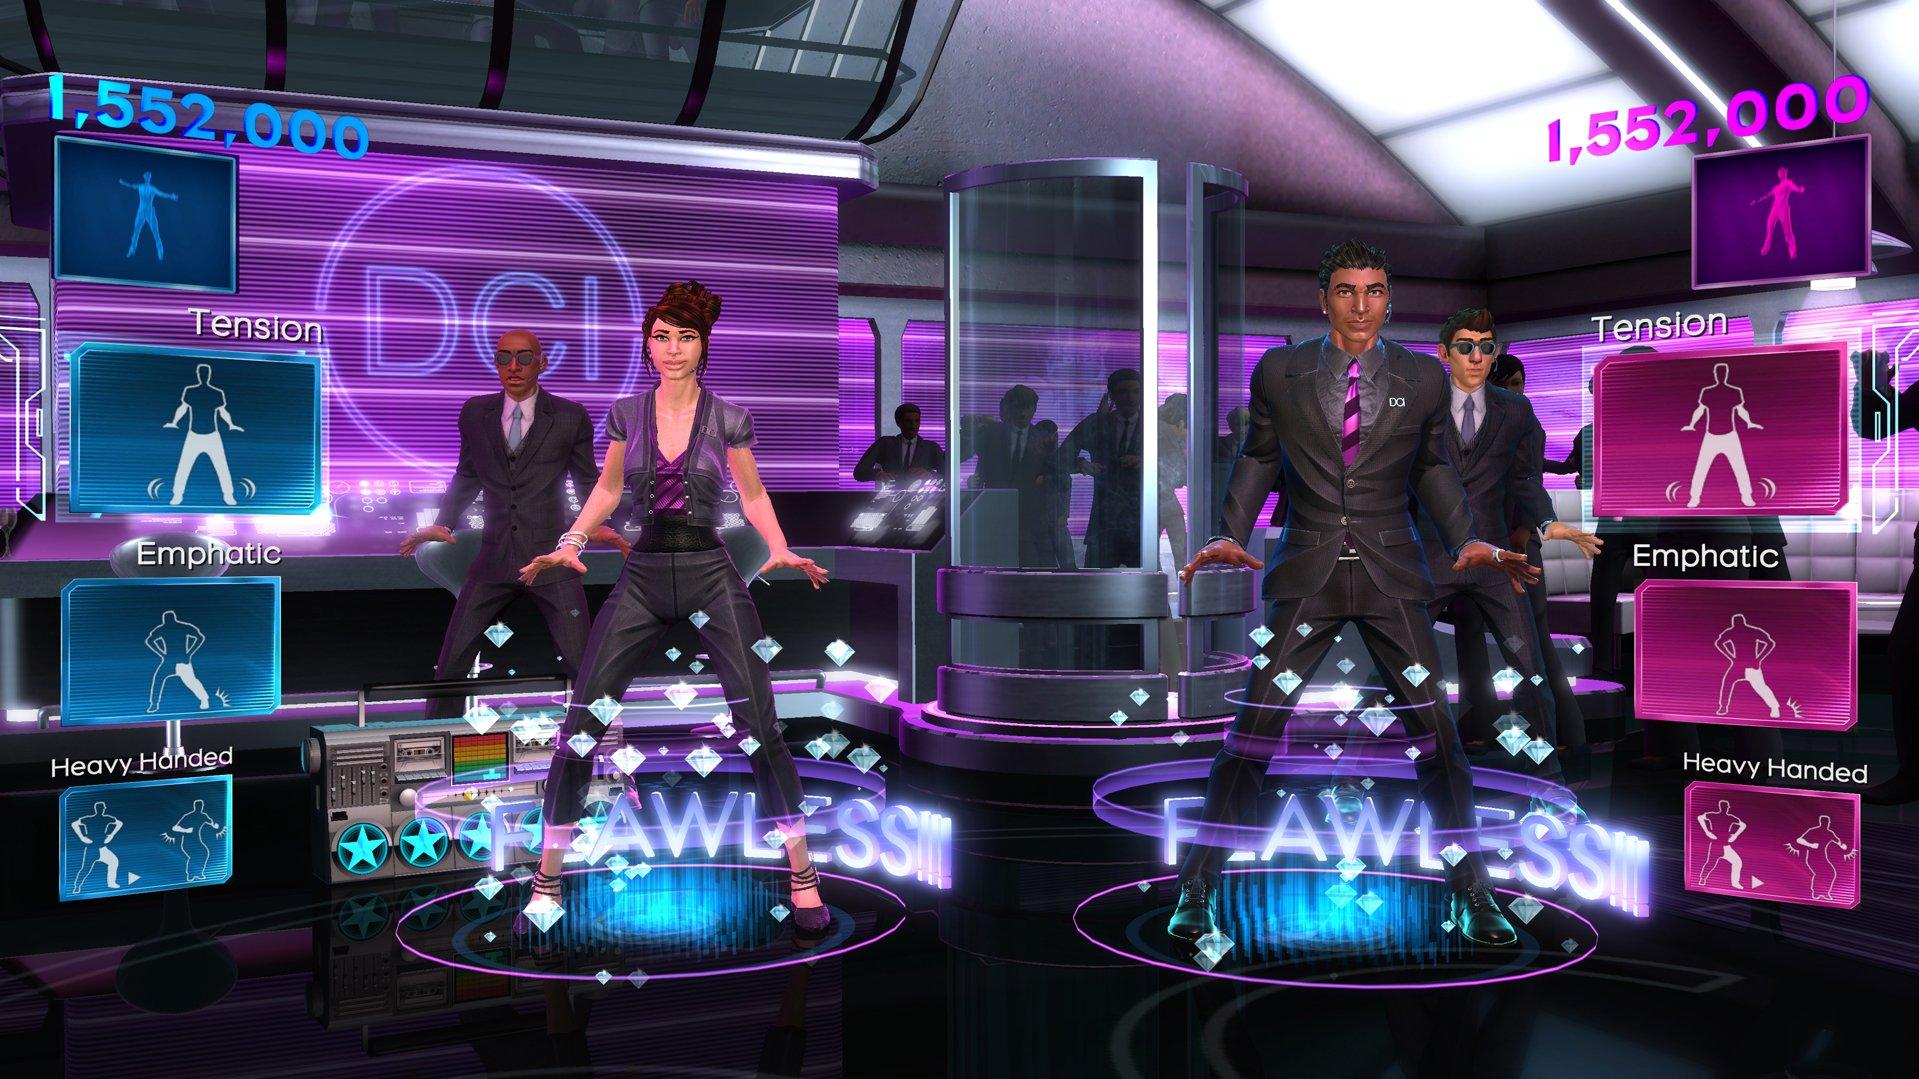 Jogo Dance Central 3 Usado - Xbox 360 - Toygames